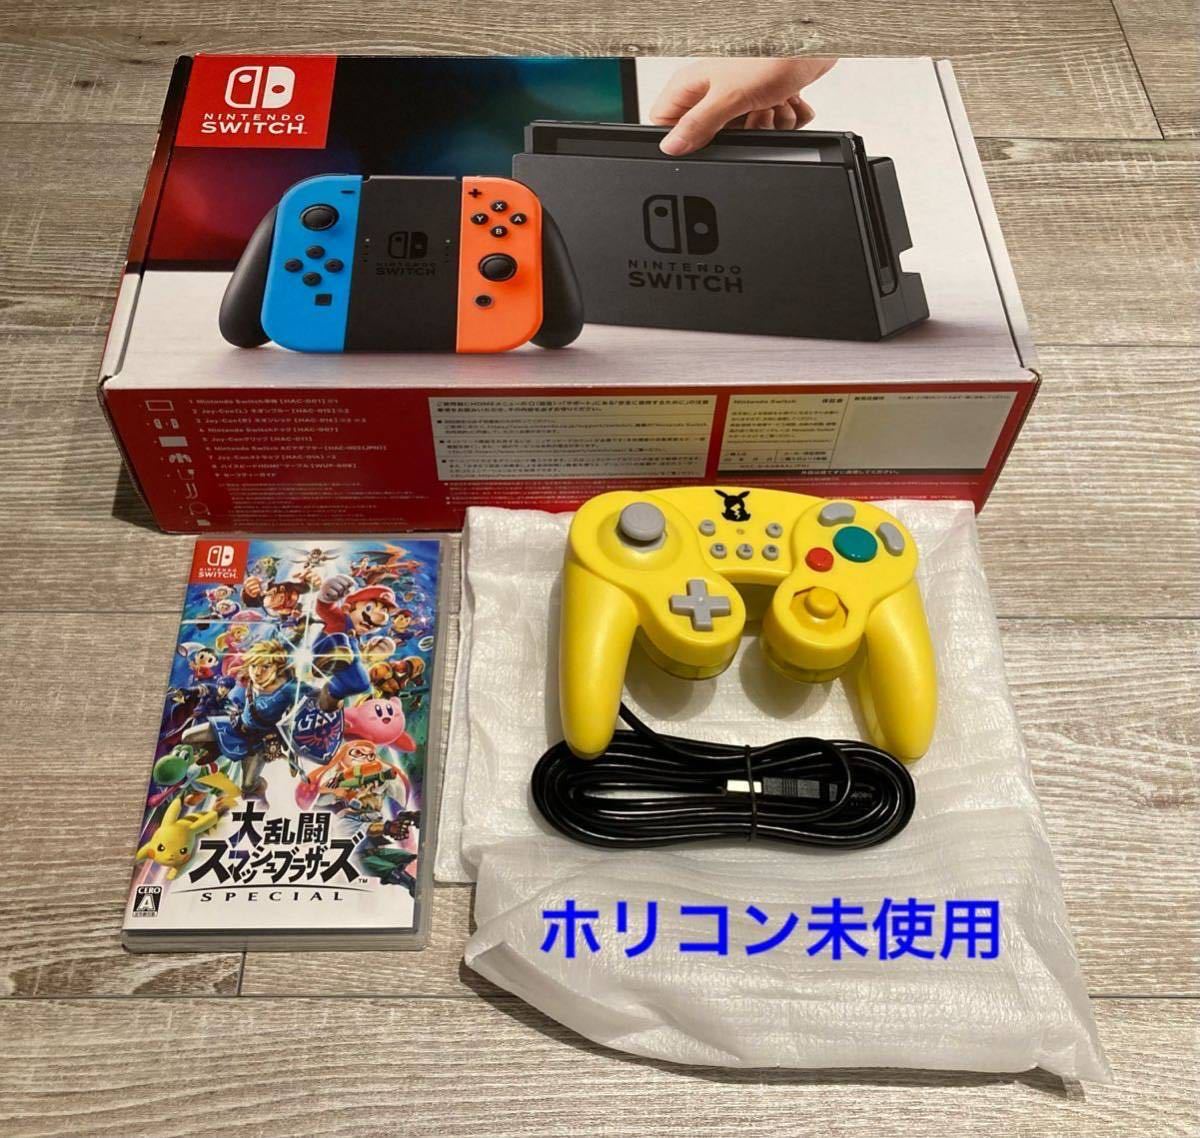 任天堂 Nintendo Switch 大乱闘スマッシュブラザーズ SPECIALセット 